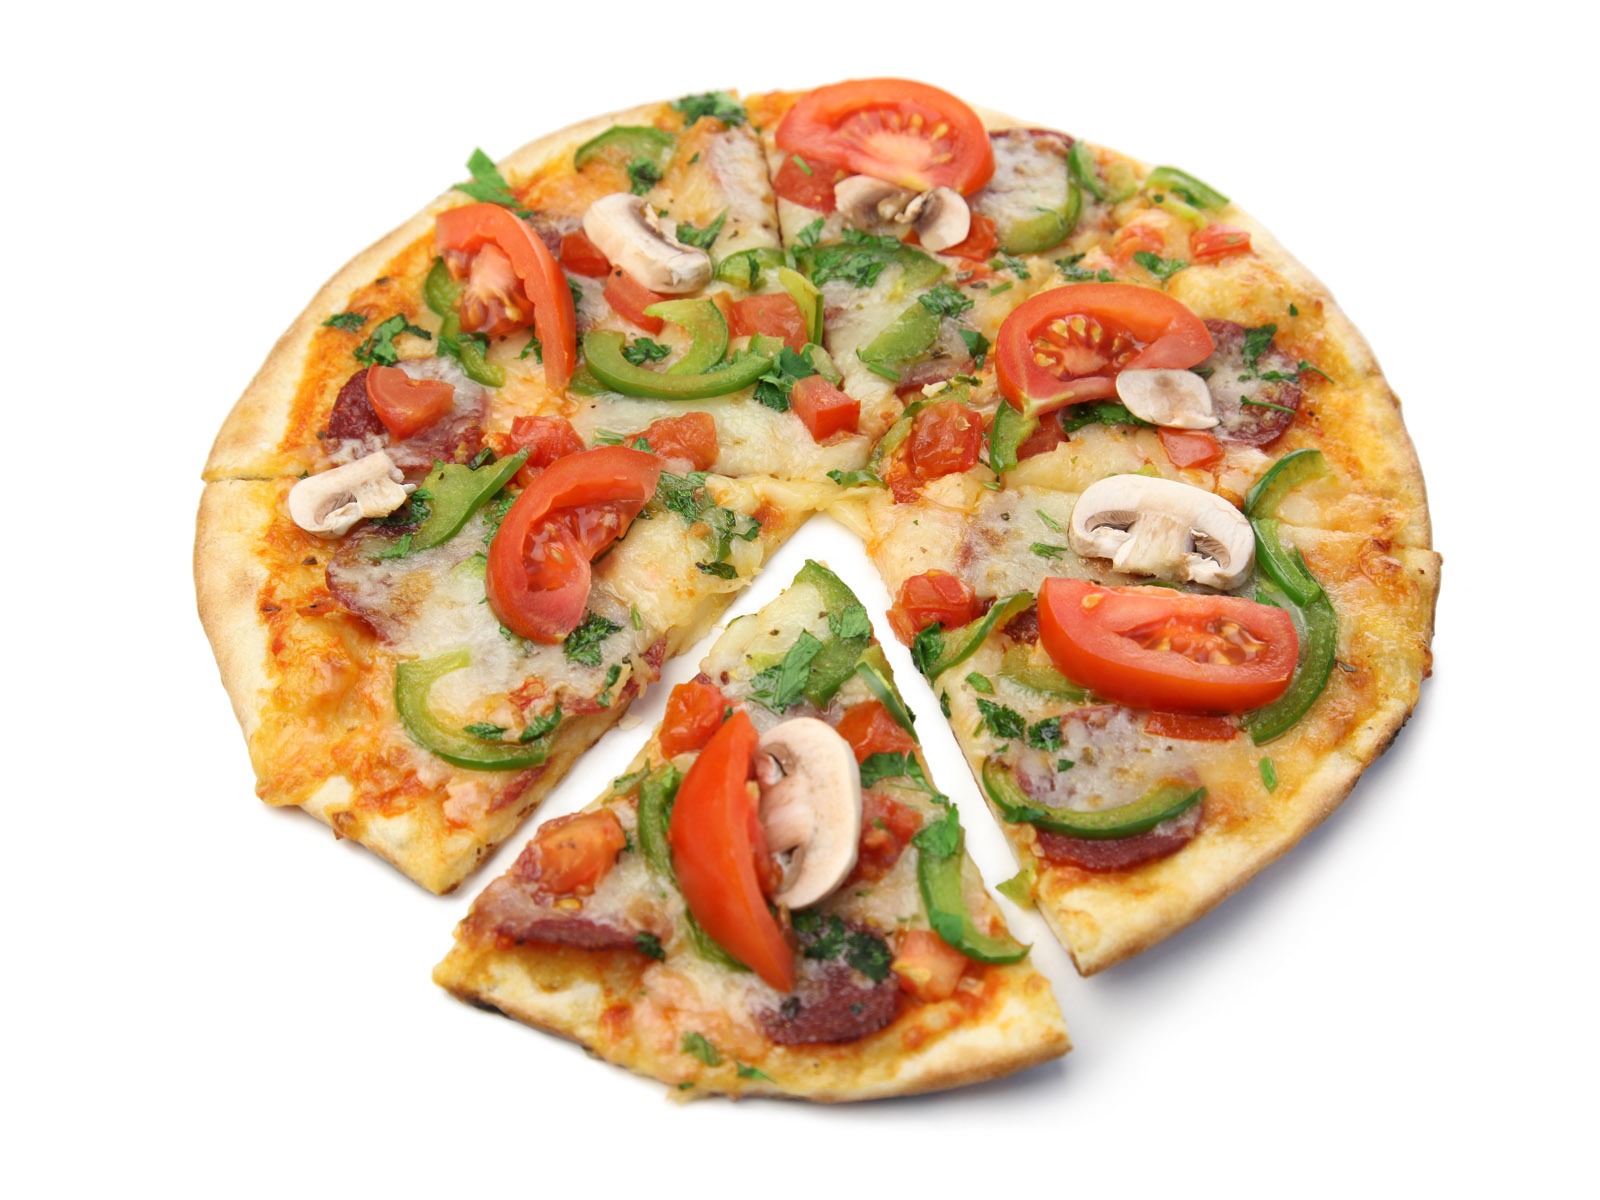 Fondos de pizzerías de Alimentos (4) #14 - 1600x1200